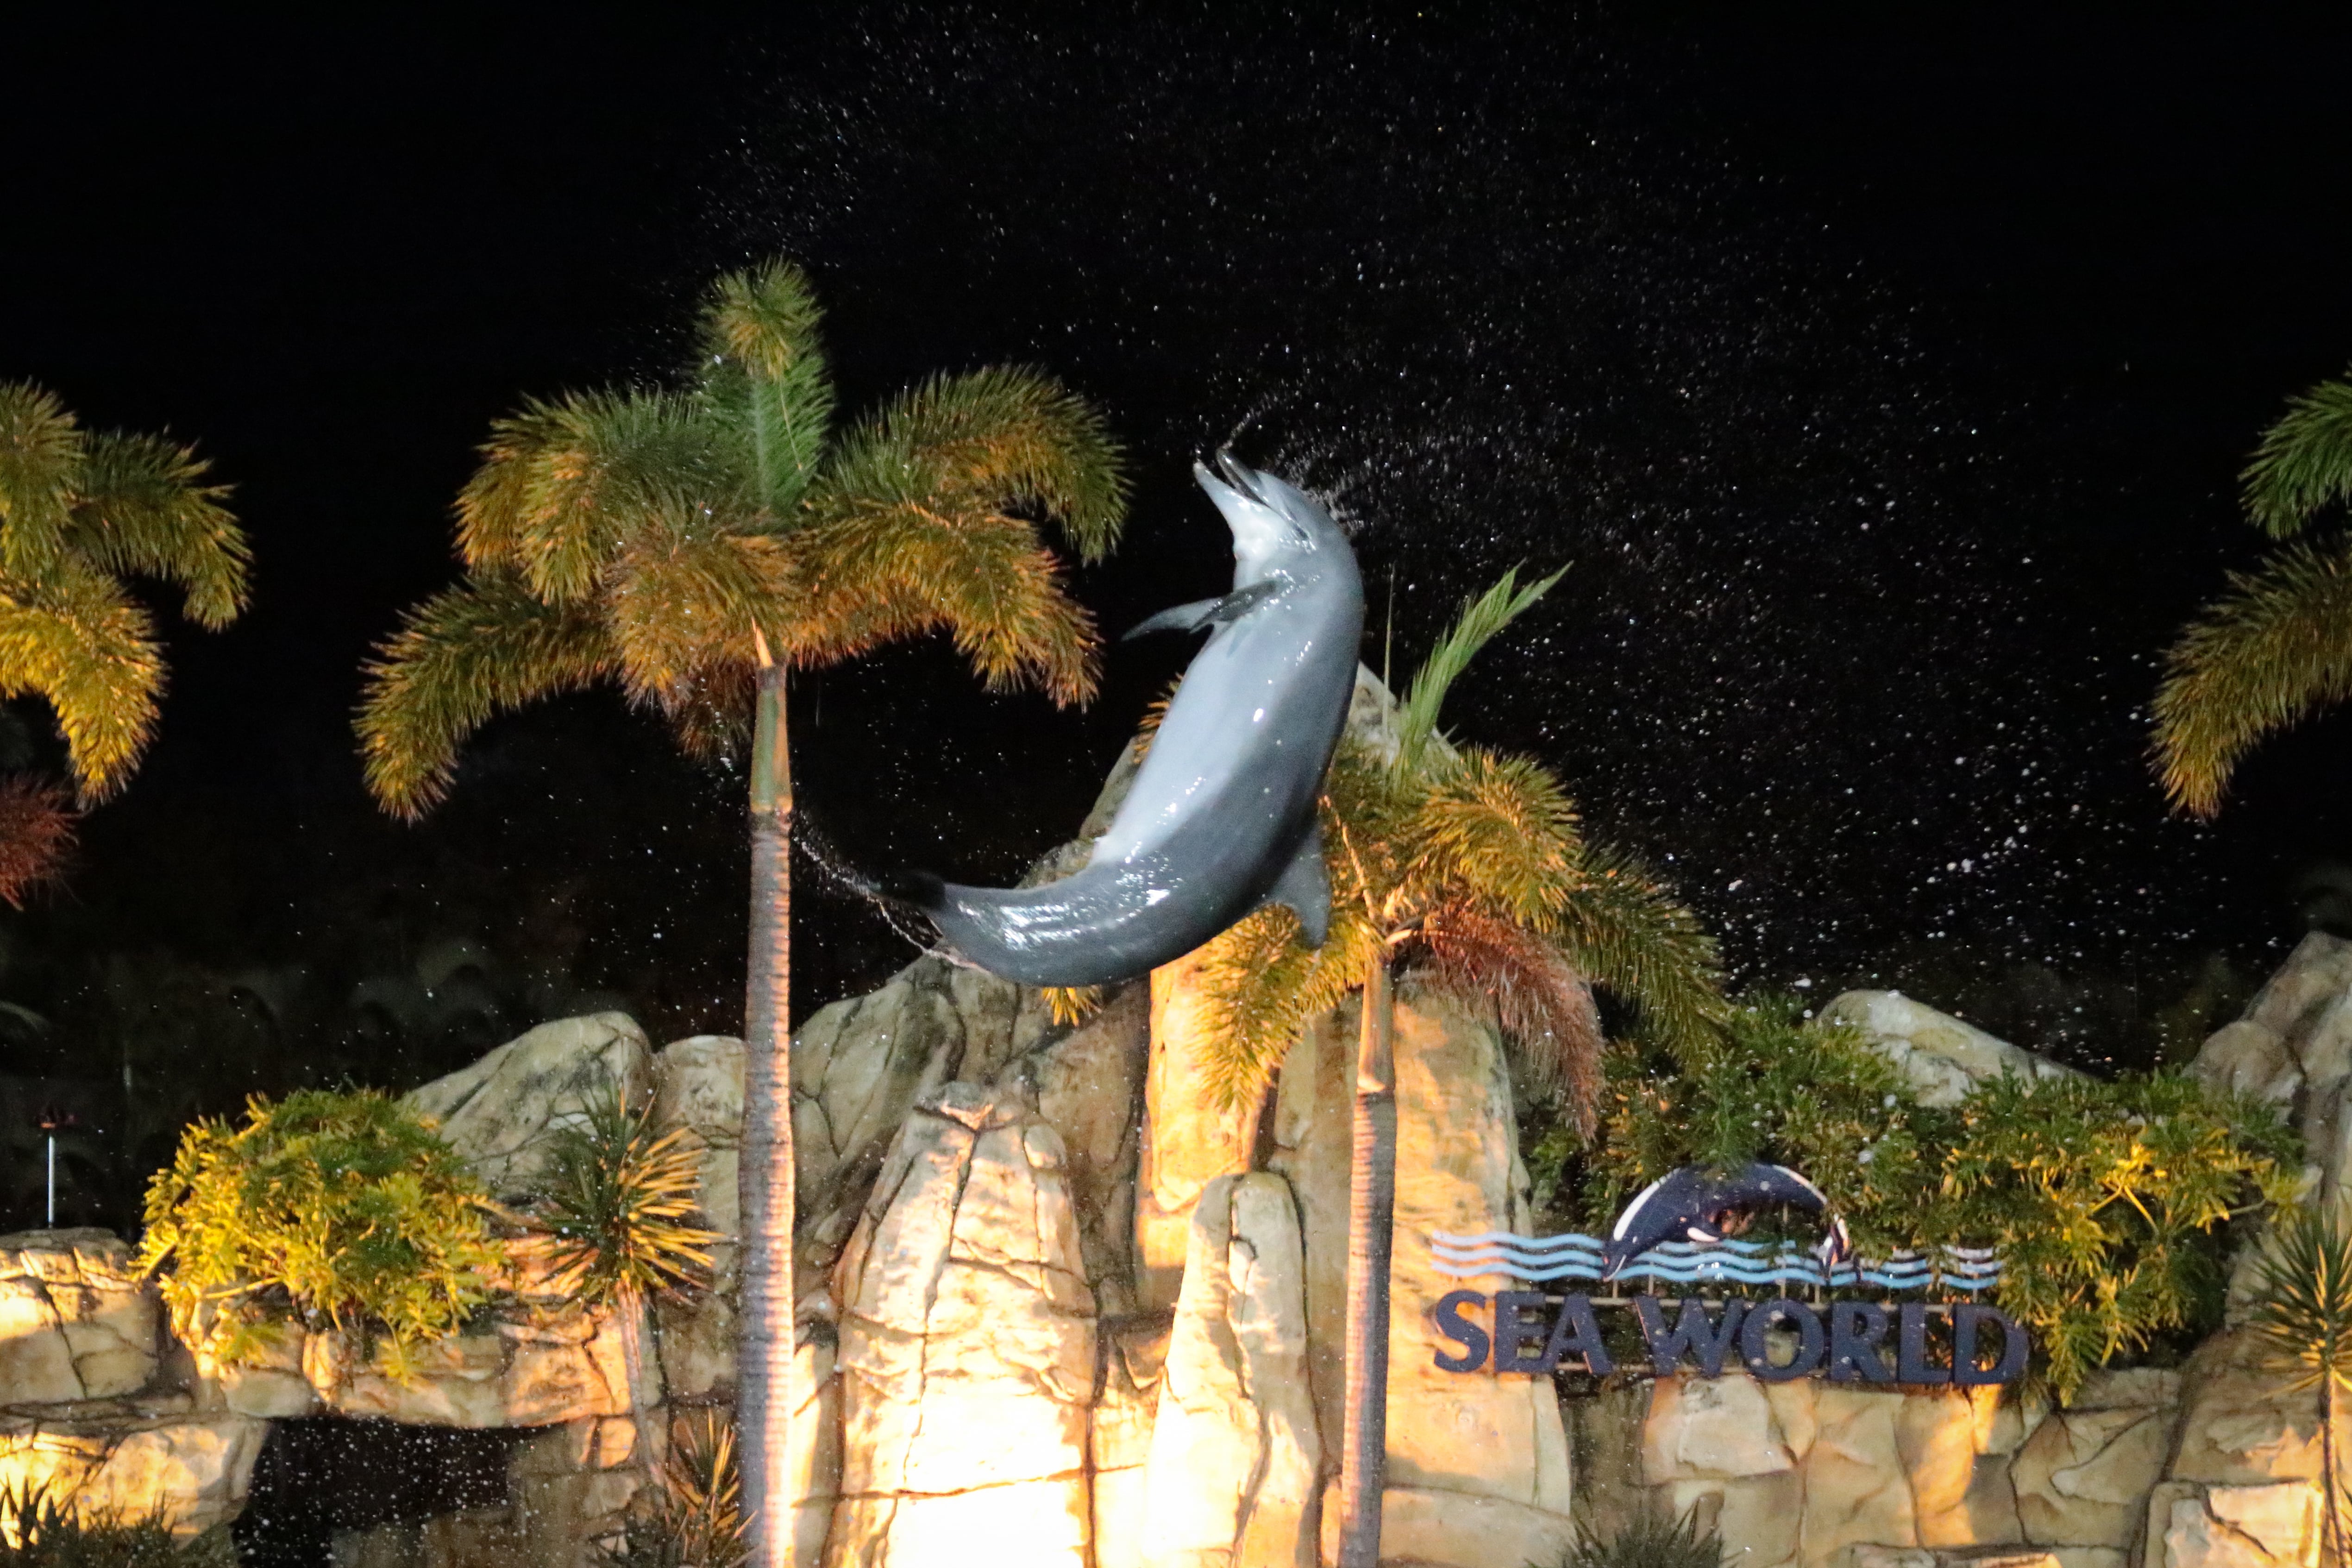 Um golfinho em cativeiro se apresentando no Sea World Spooky Nights, descrito como “uma noite espetacular para toda a família com o parque transformado por meio de cores, imagens e sons”. 